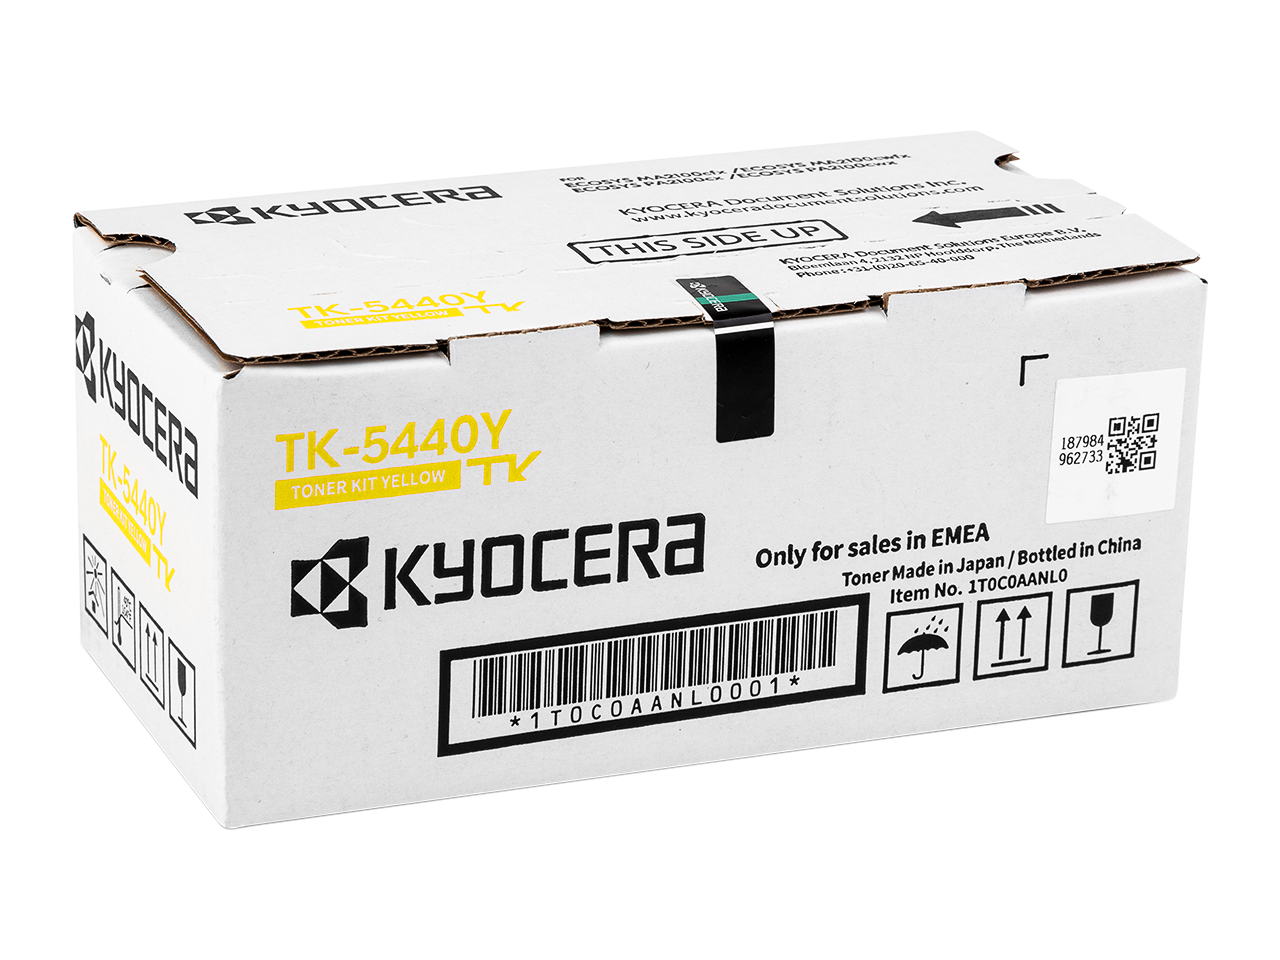 Toner Kyocera TK-5440Y, PA2100, MA2100, yellow, 1T0C0AANL0, originál